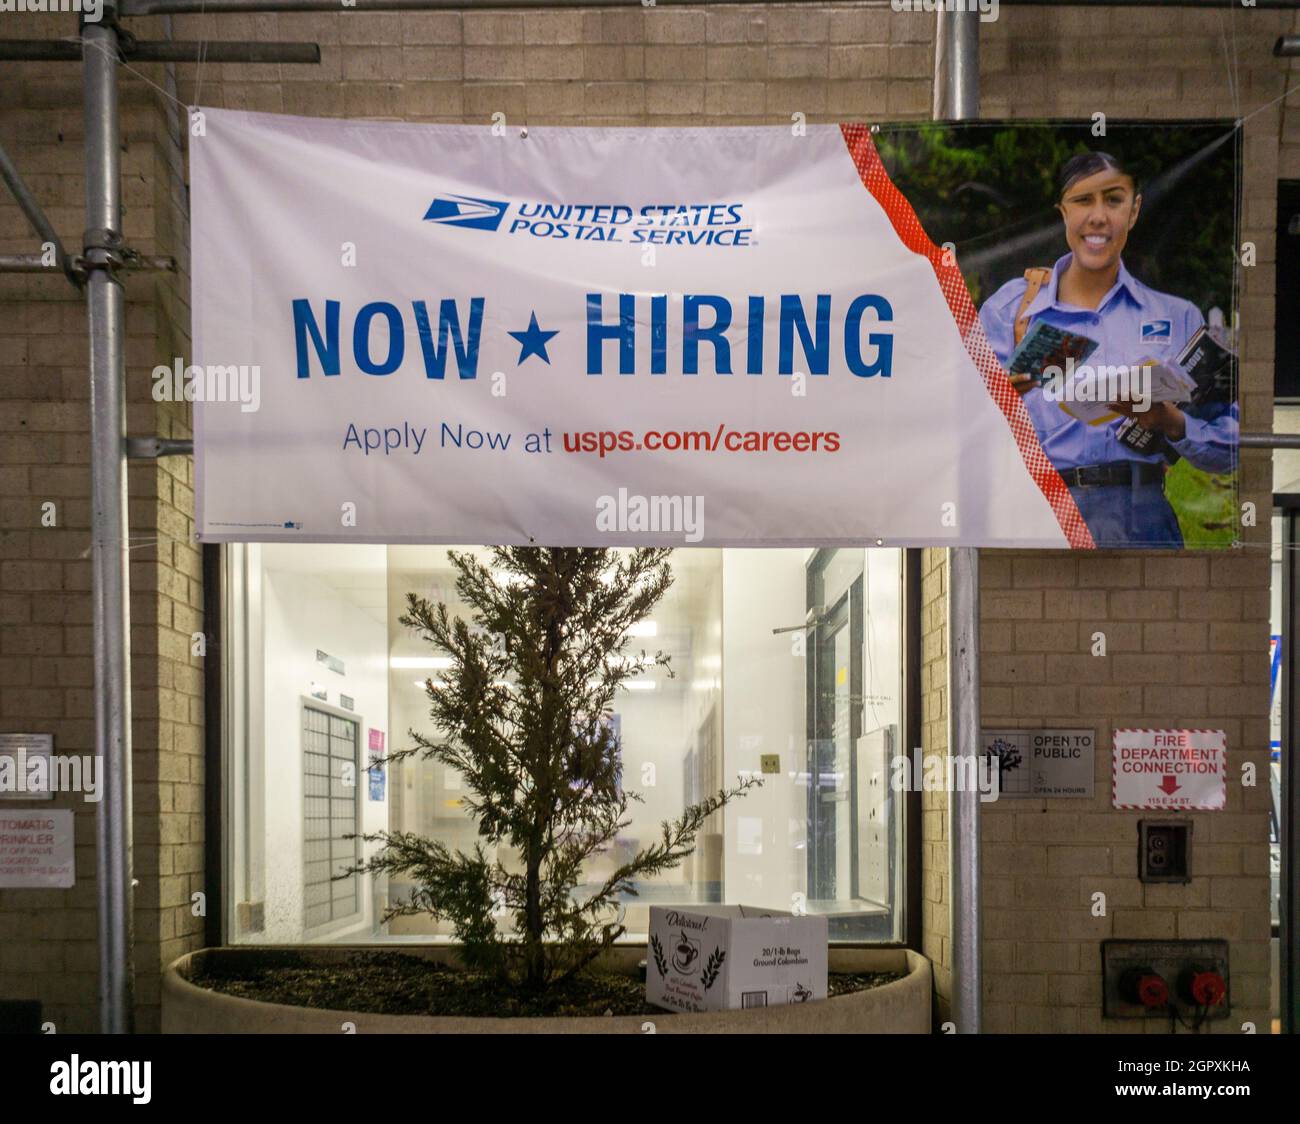 Un segno nella finestra di un ufficio postale a New York mercoledì 29 settembre 2021 informa i potenziali dipendenti delle opportunità di lavoro per l'USPS. (© Richard B. Levine) Foto Stock